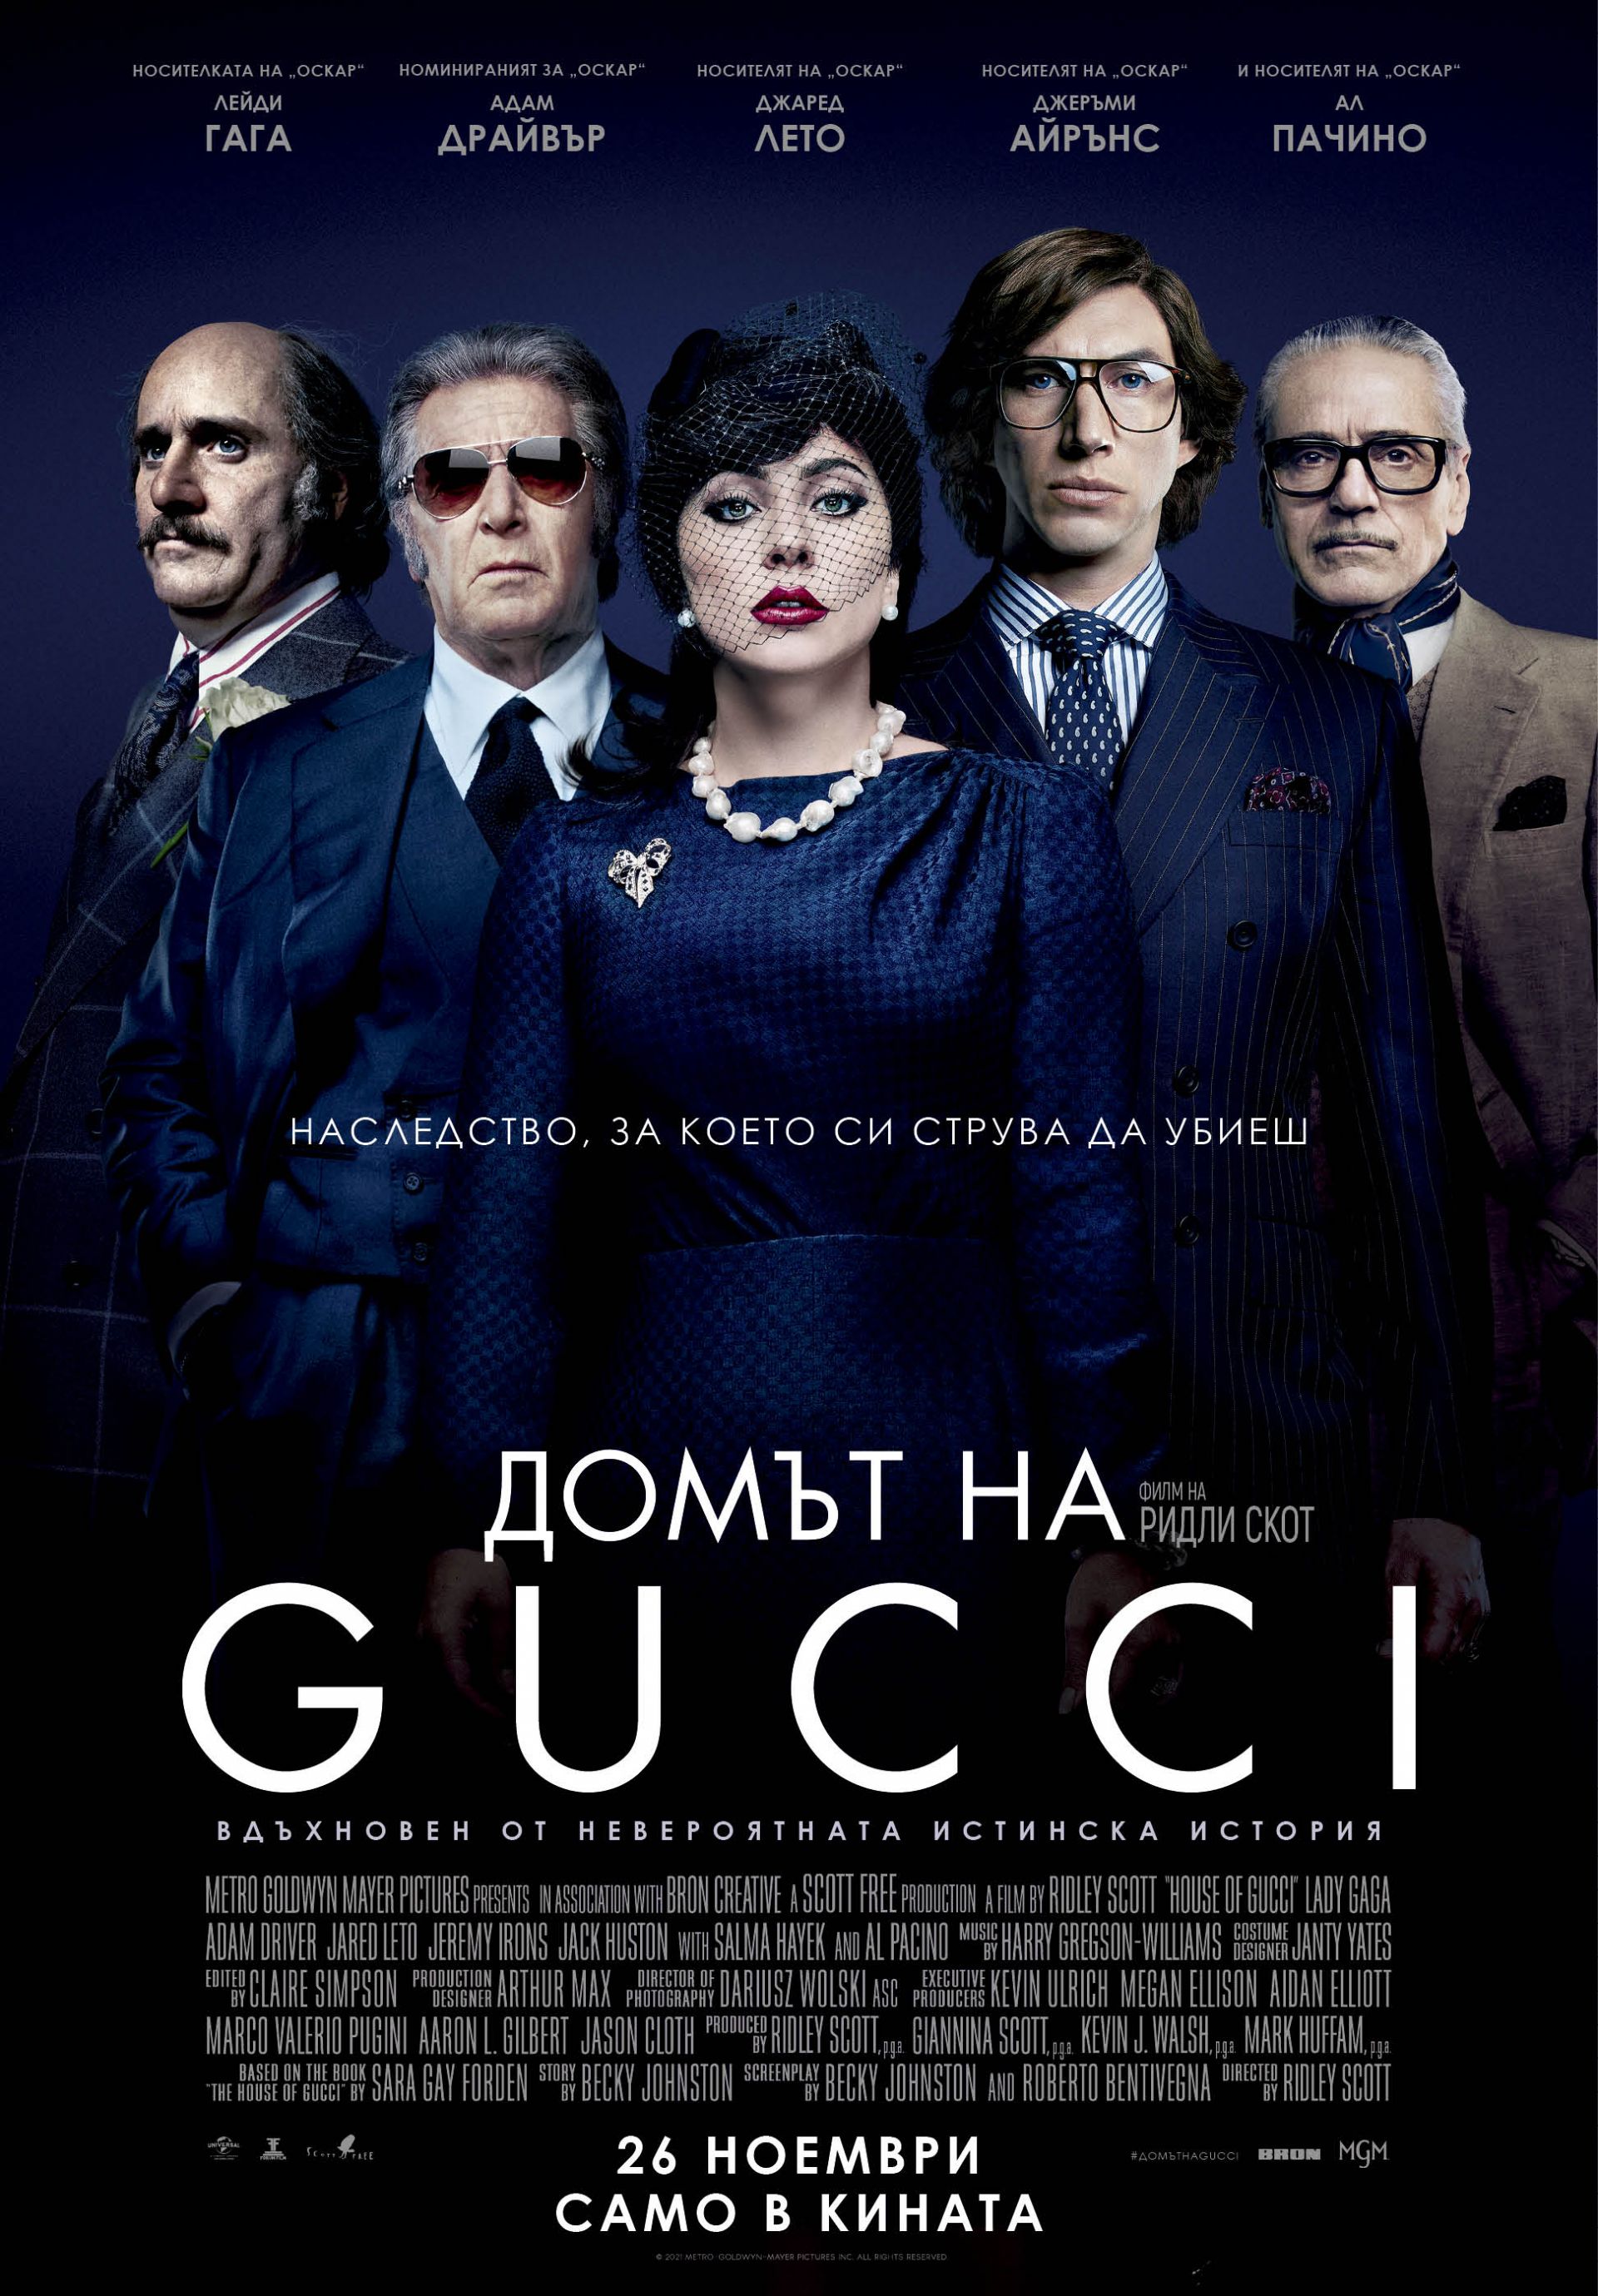 Официален плакат на филма "Домът на Gucci"